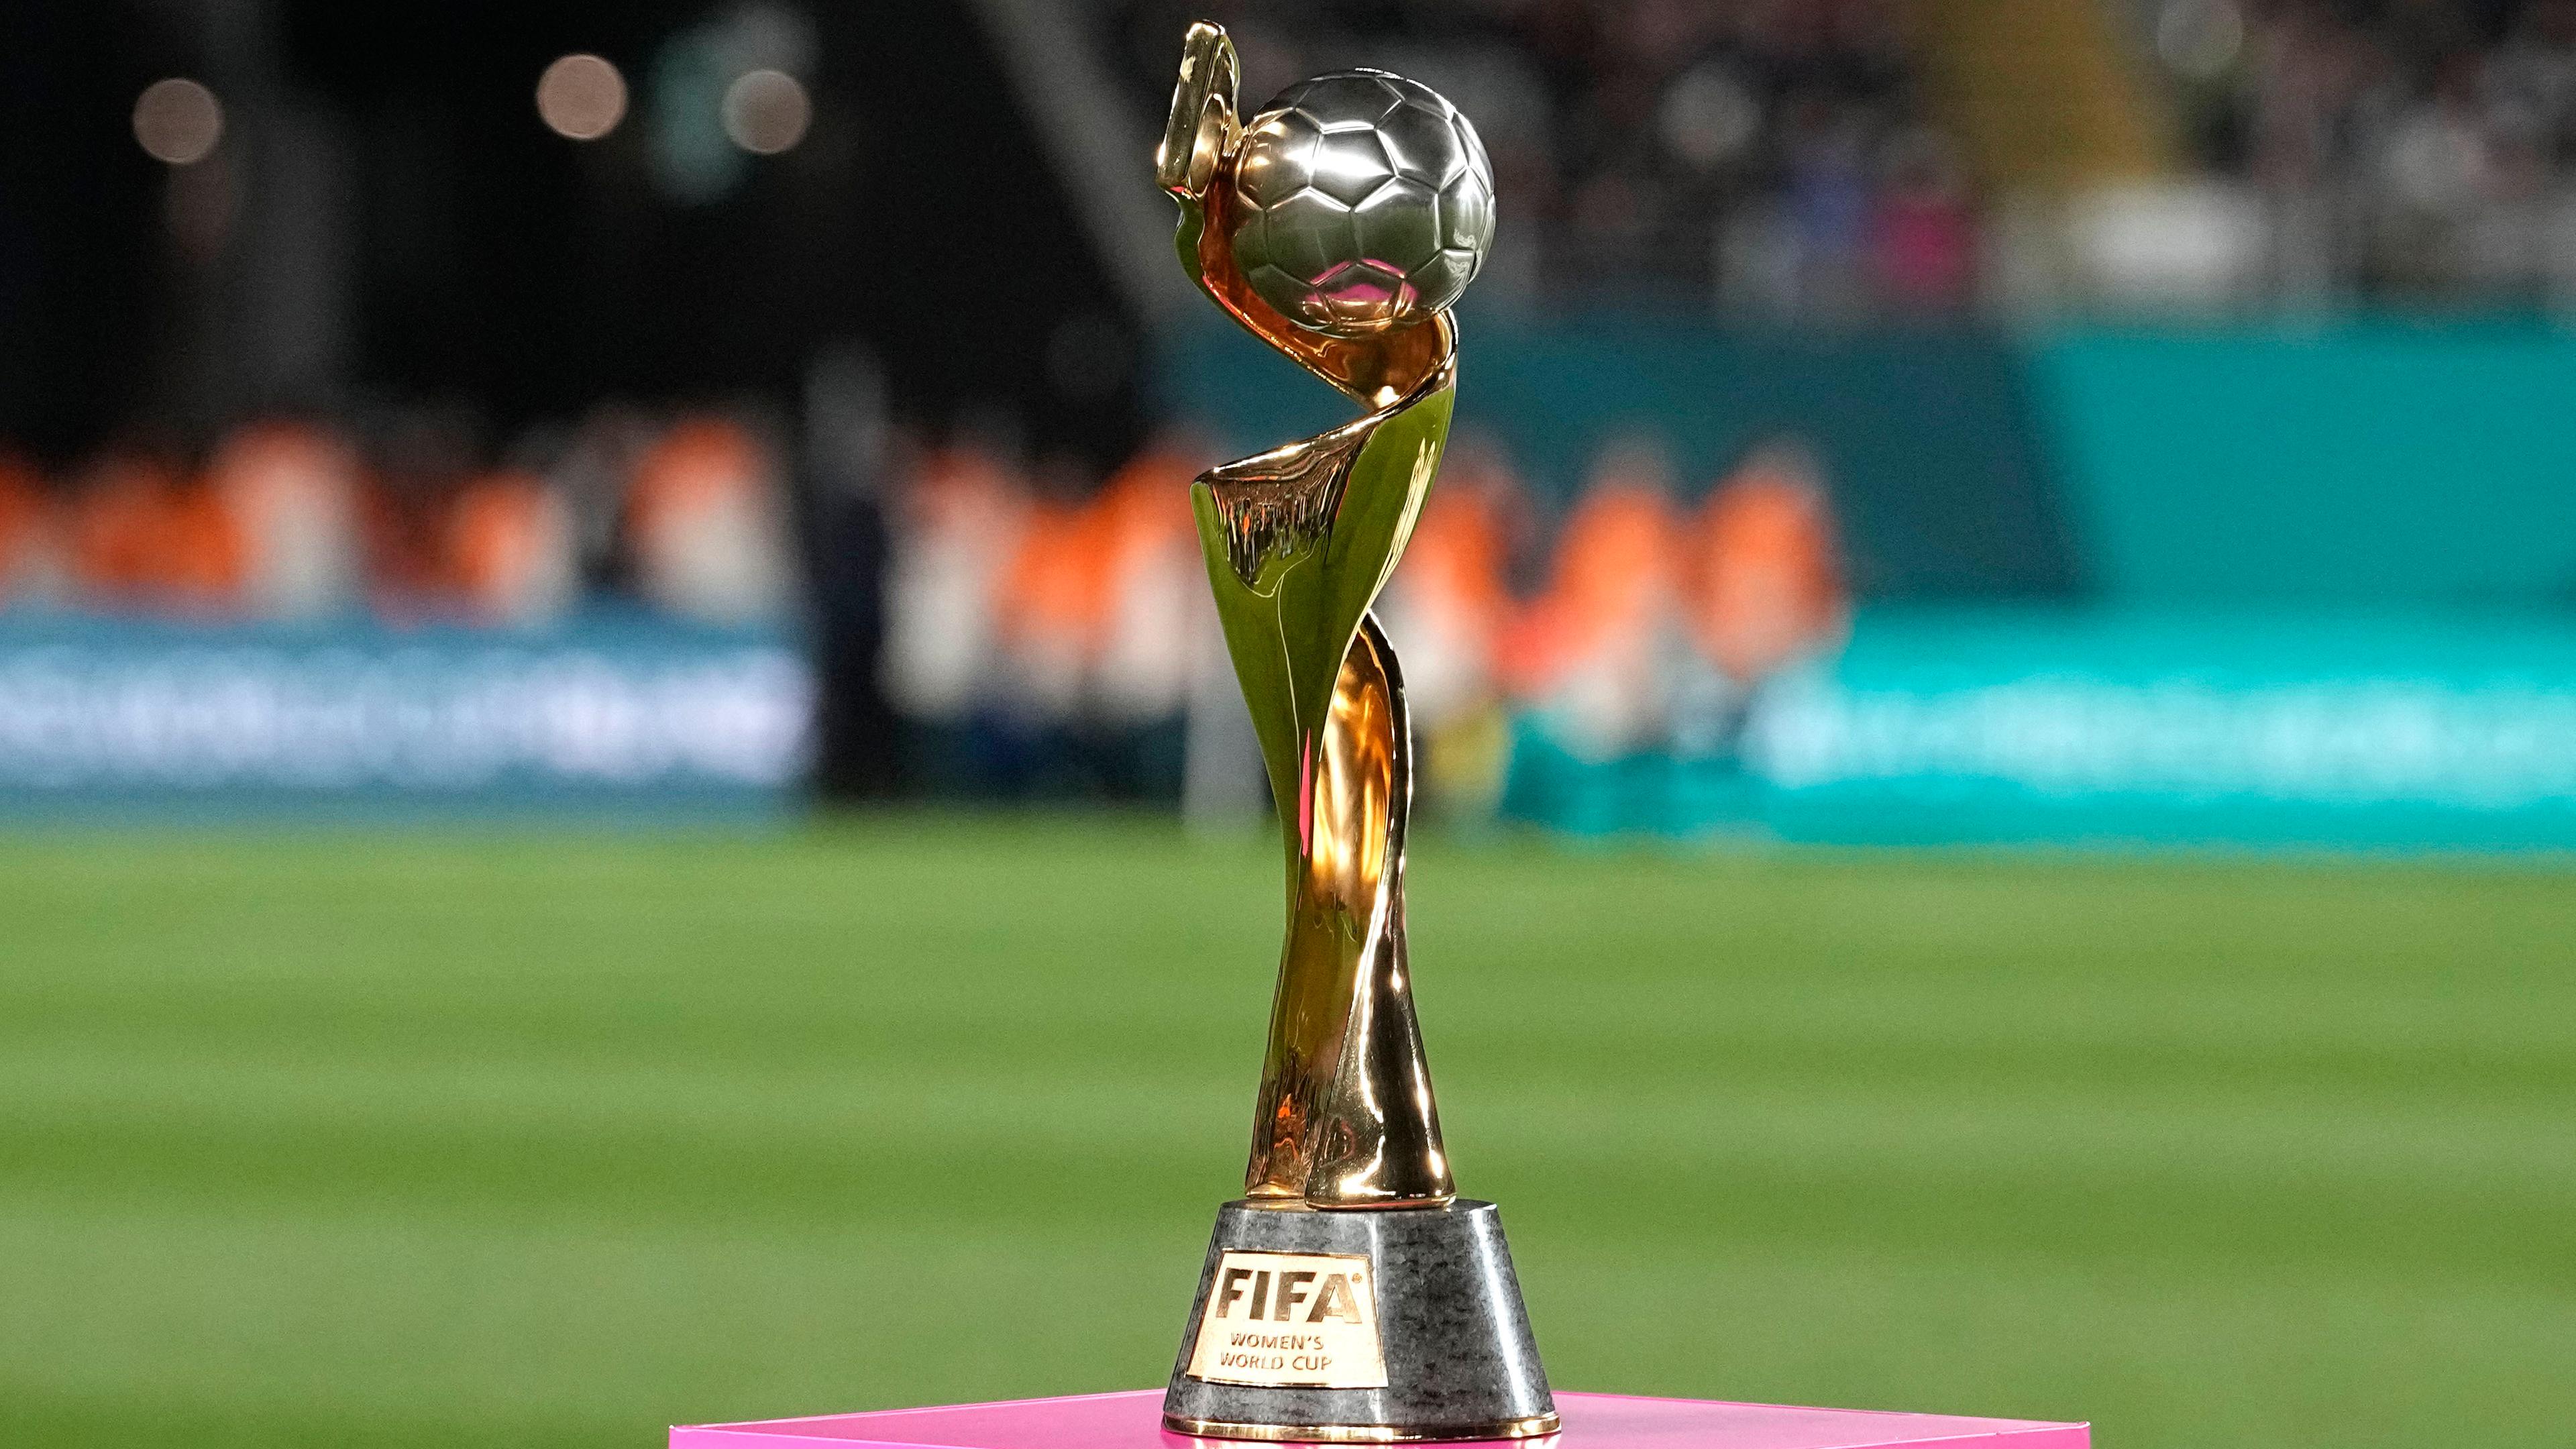 FIFA-Trophäe der Fußball-WM der Frauen wird auf einem pinken Sockel auf einem Fußballfeld präsentiert